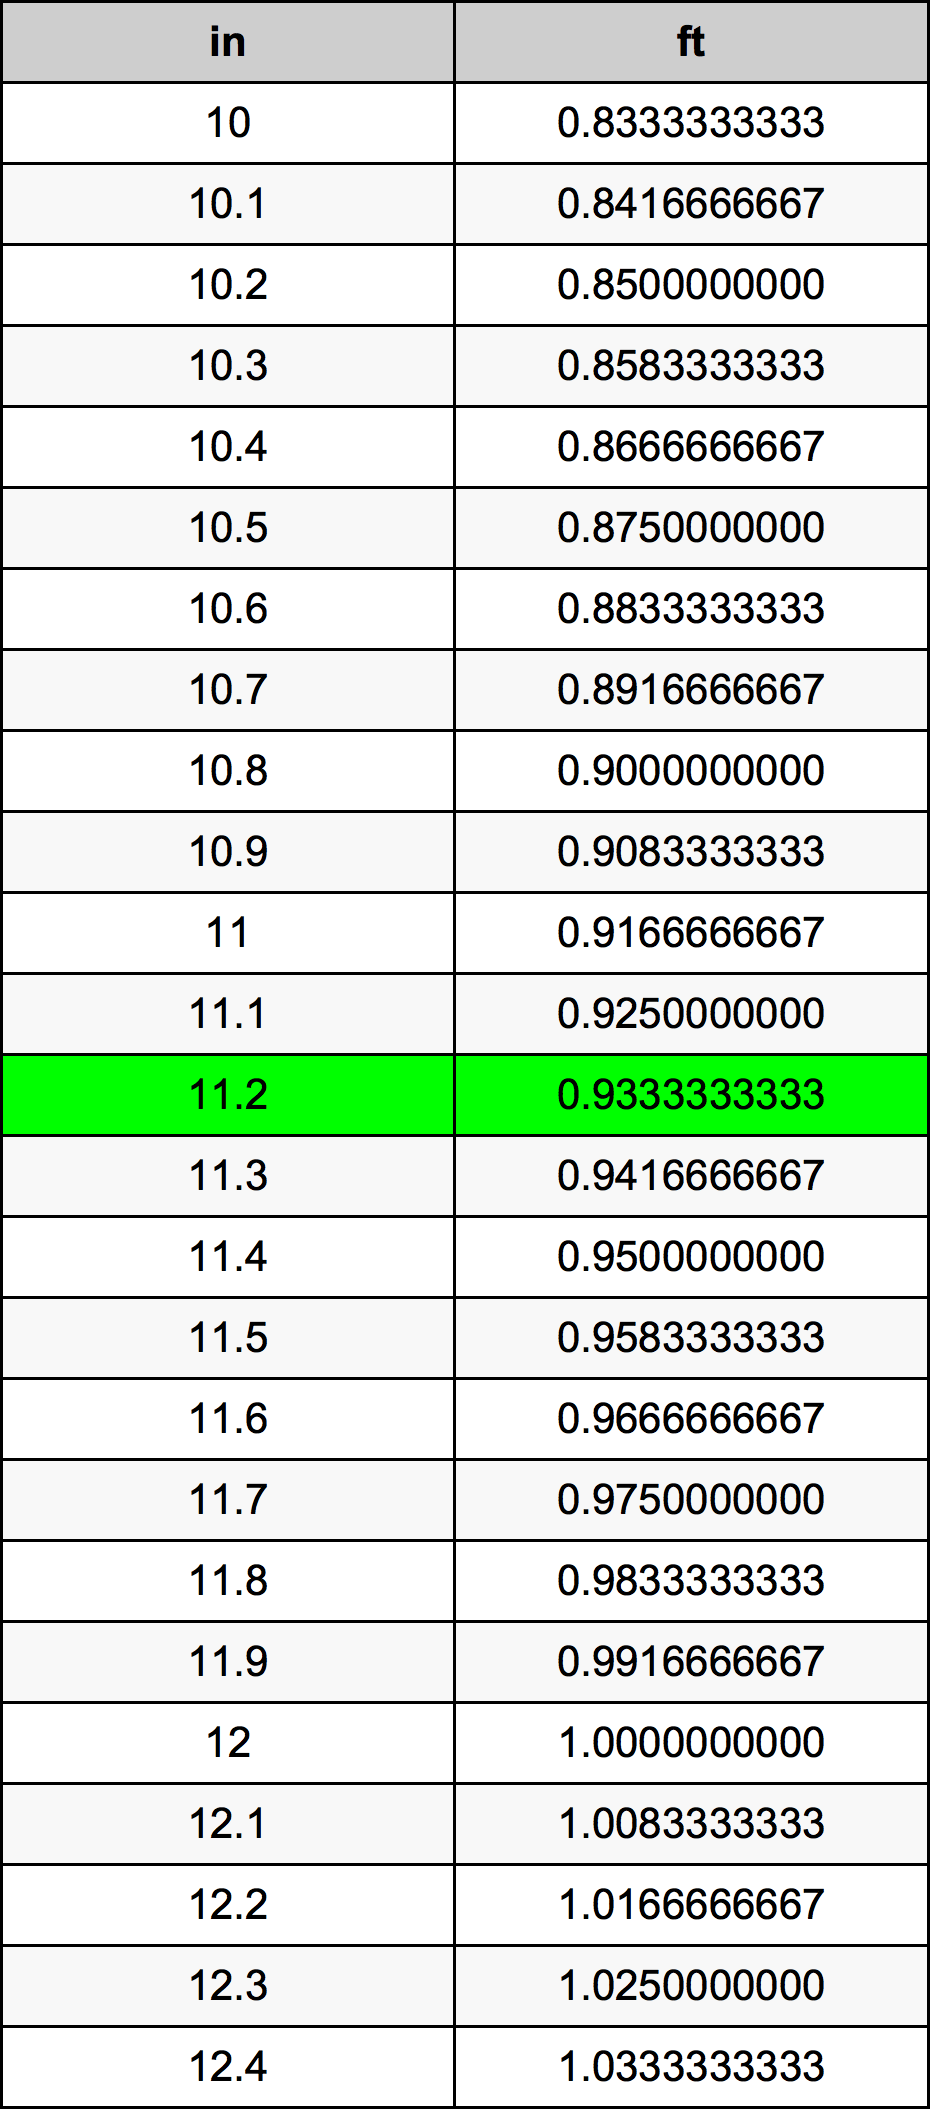 11.2 Pulzier konverżjoni tabella